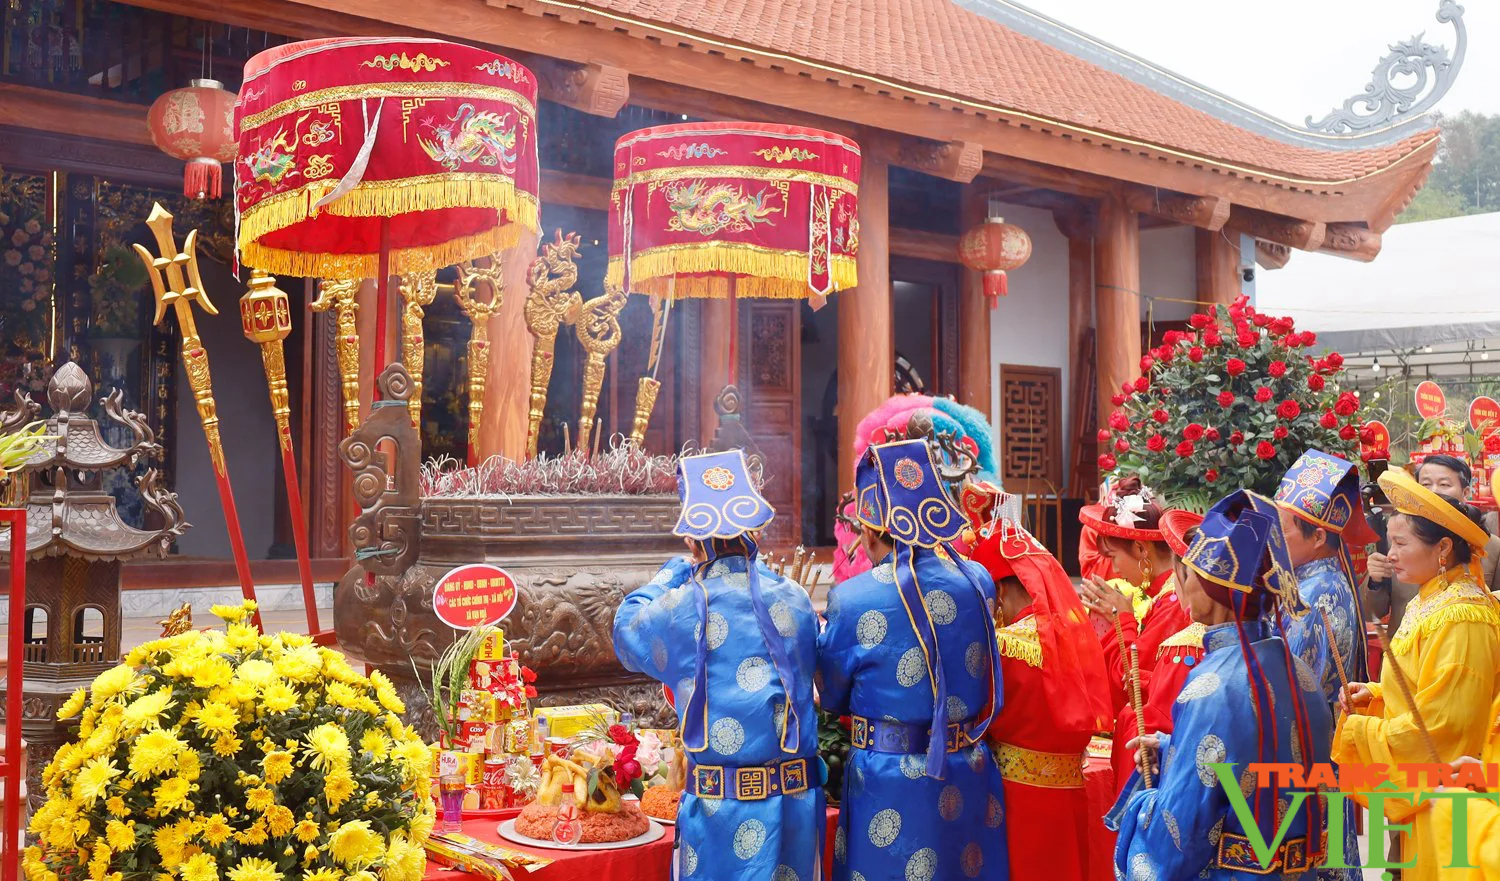 Lễ hội có xôi gấc đỏ thắm, gà luộc cánh tiên thu hút hàng nghìn du khách tới dâng hương ở Lào Cai- Ảnh 3.